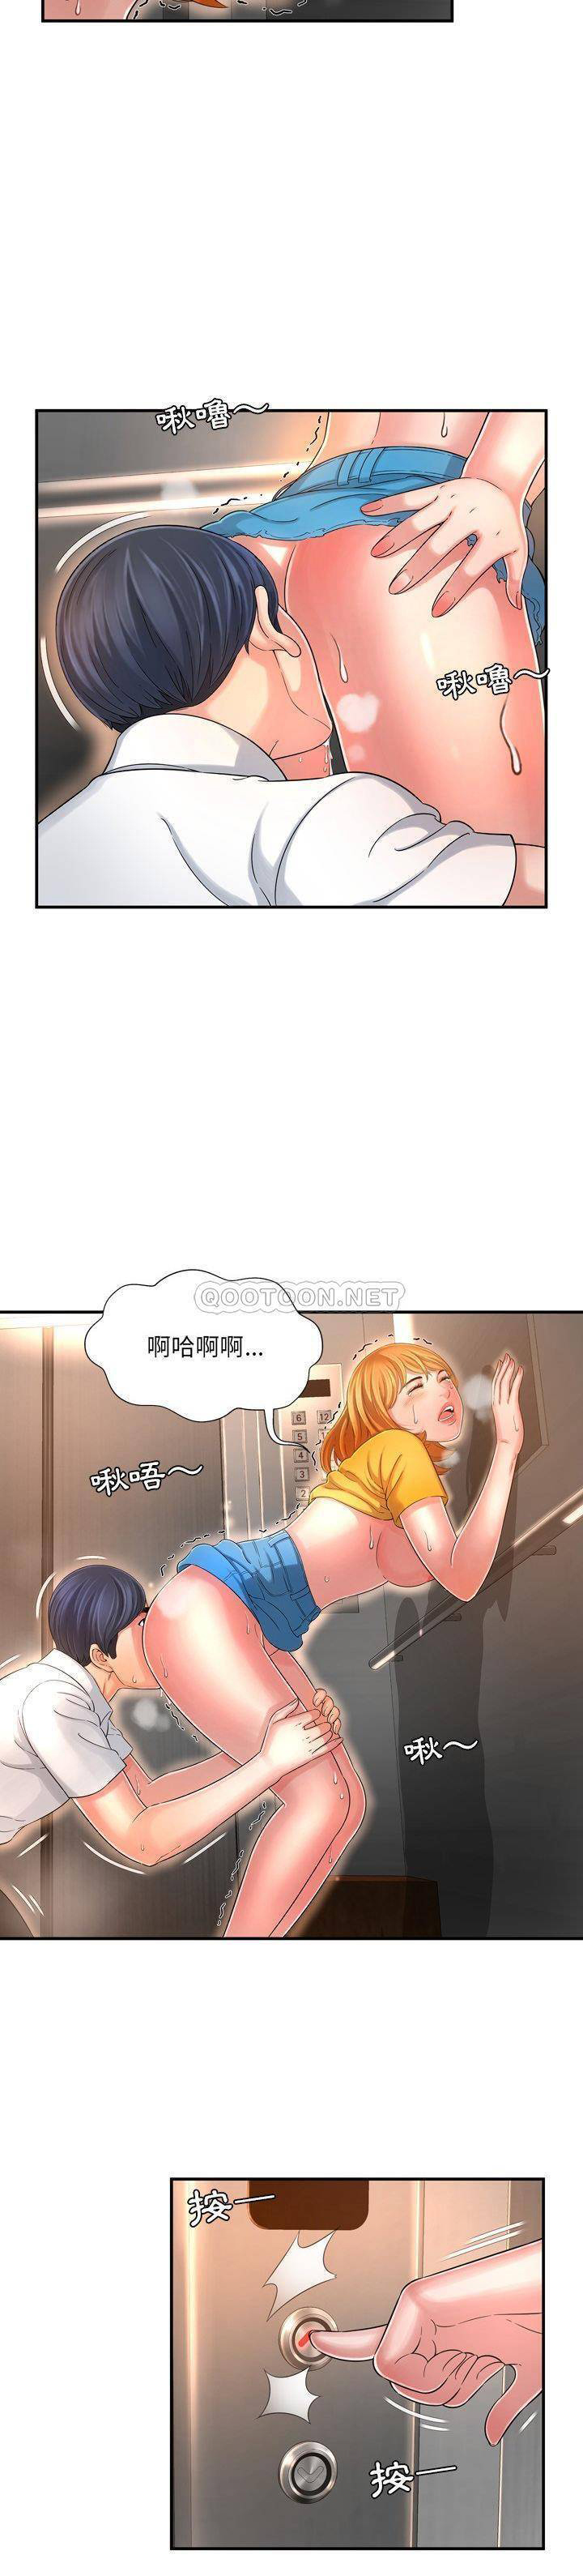 韩国污漫画 深淵 第13话 10